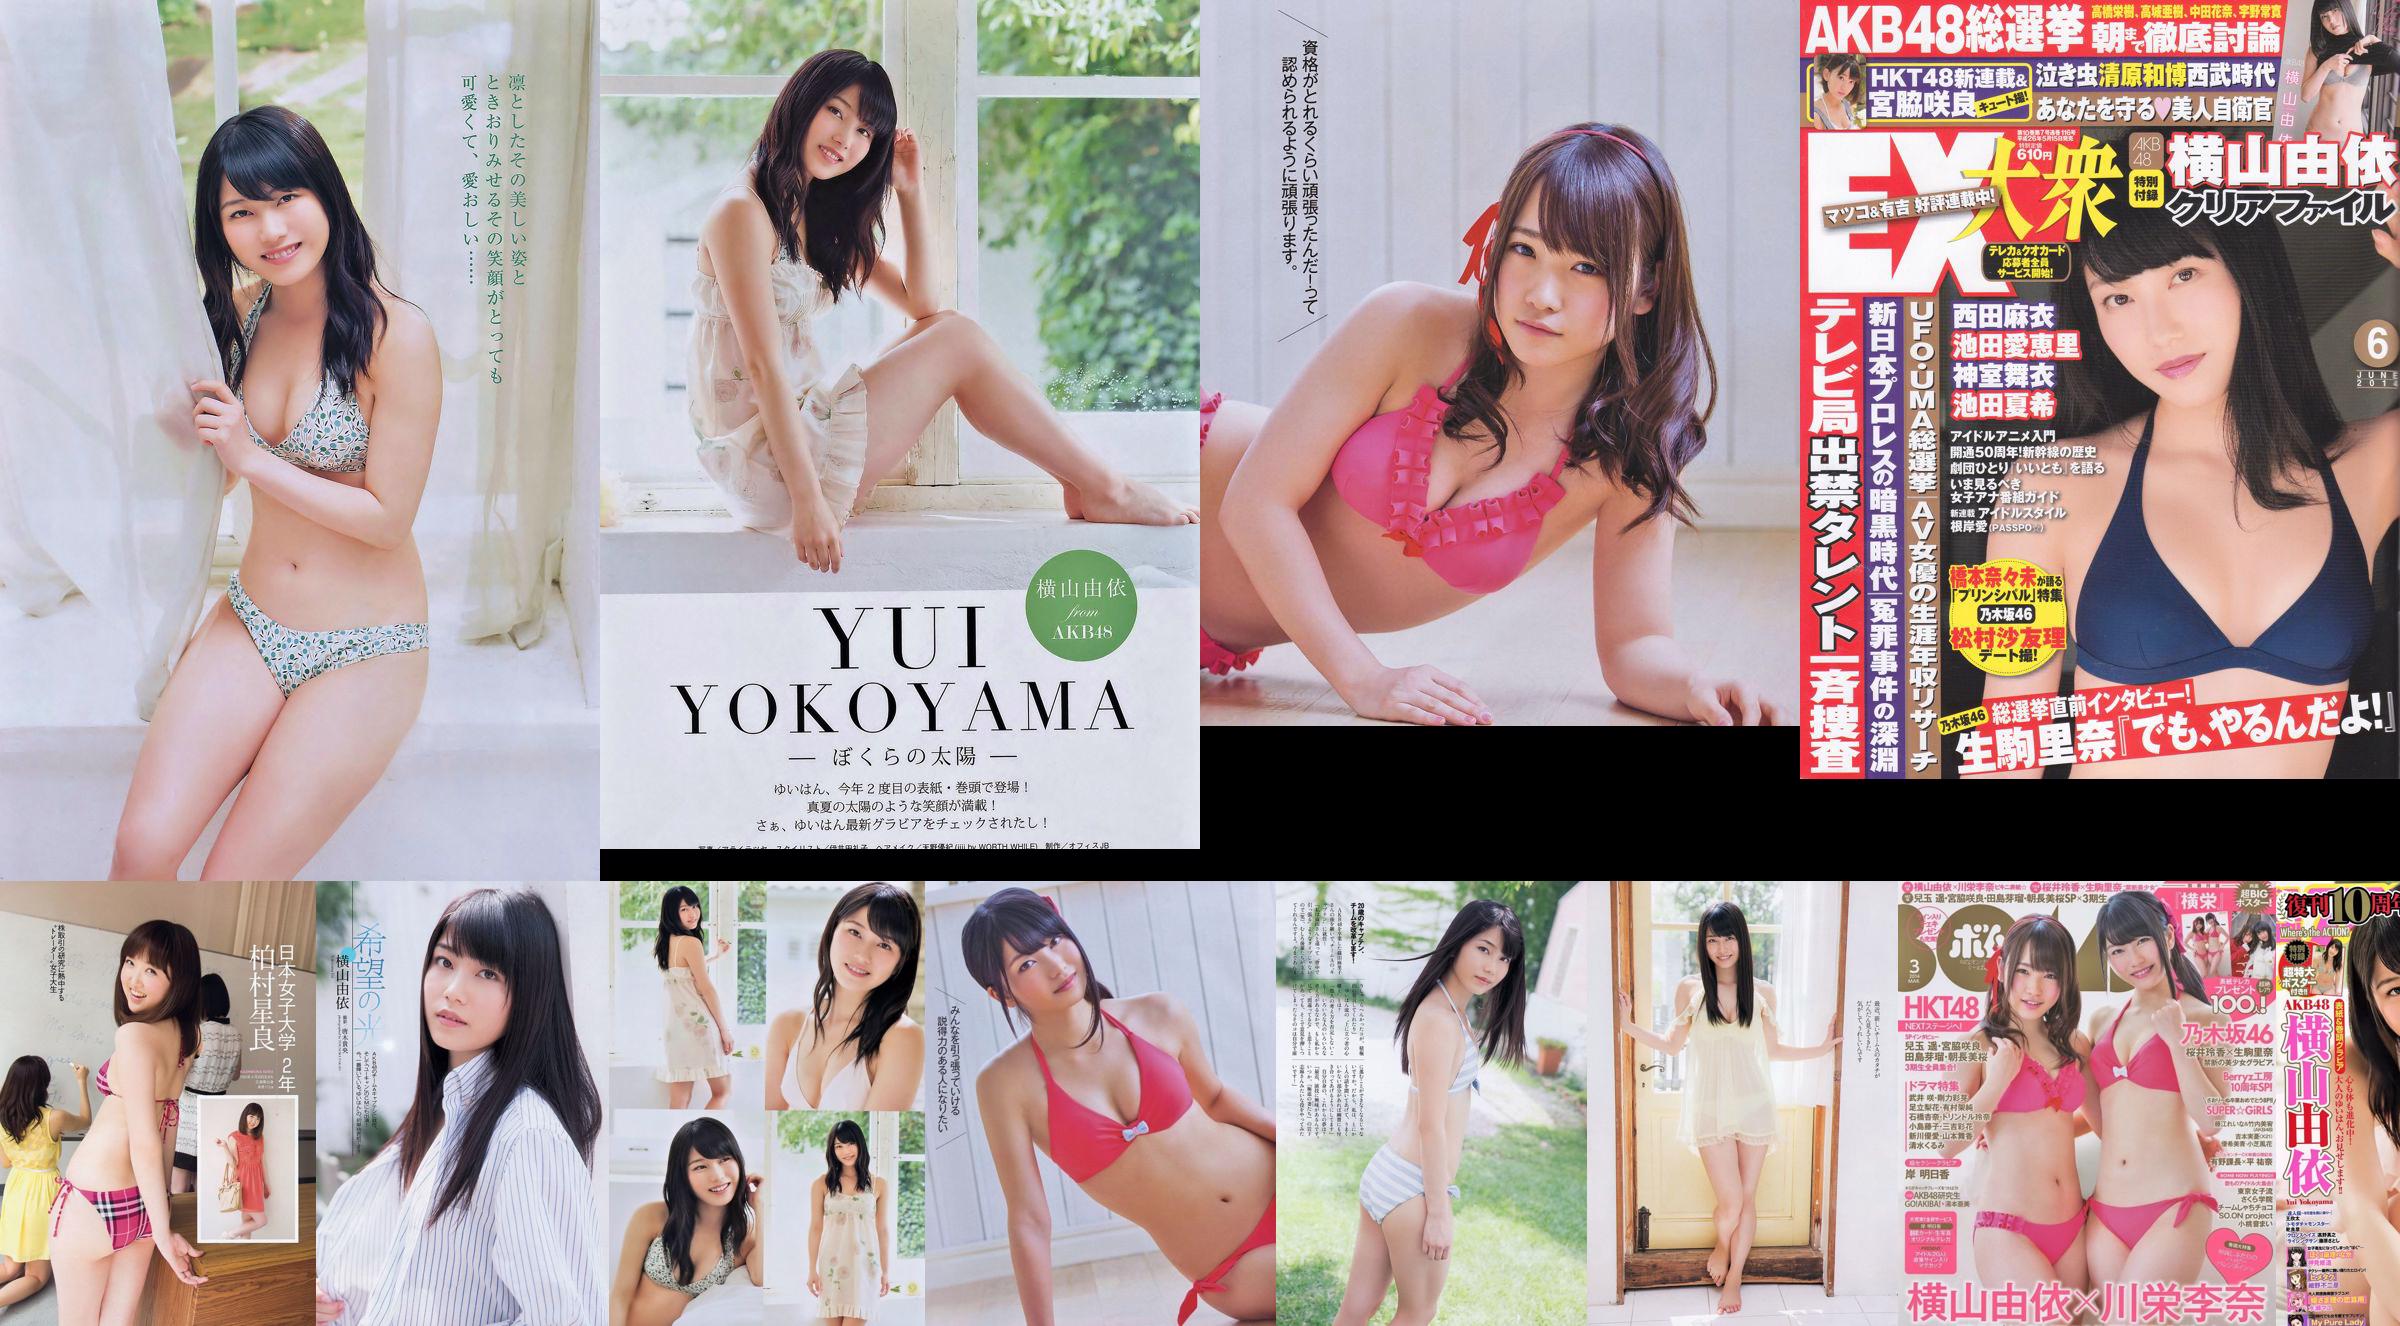 Yui Yokoyama Nozomi Sasaki Rina Koike Asuka Kuramochi Miwako Kakei Risa Yoshiki Ruri Shinato [Weekly Playboy] 2013 No.38 Photographie No.31f3c5 Page 5